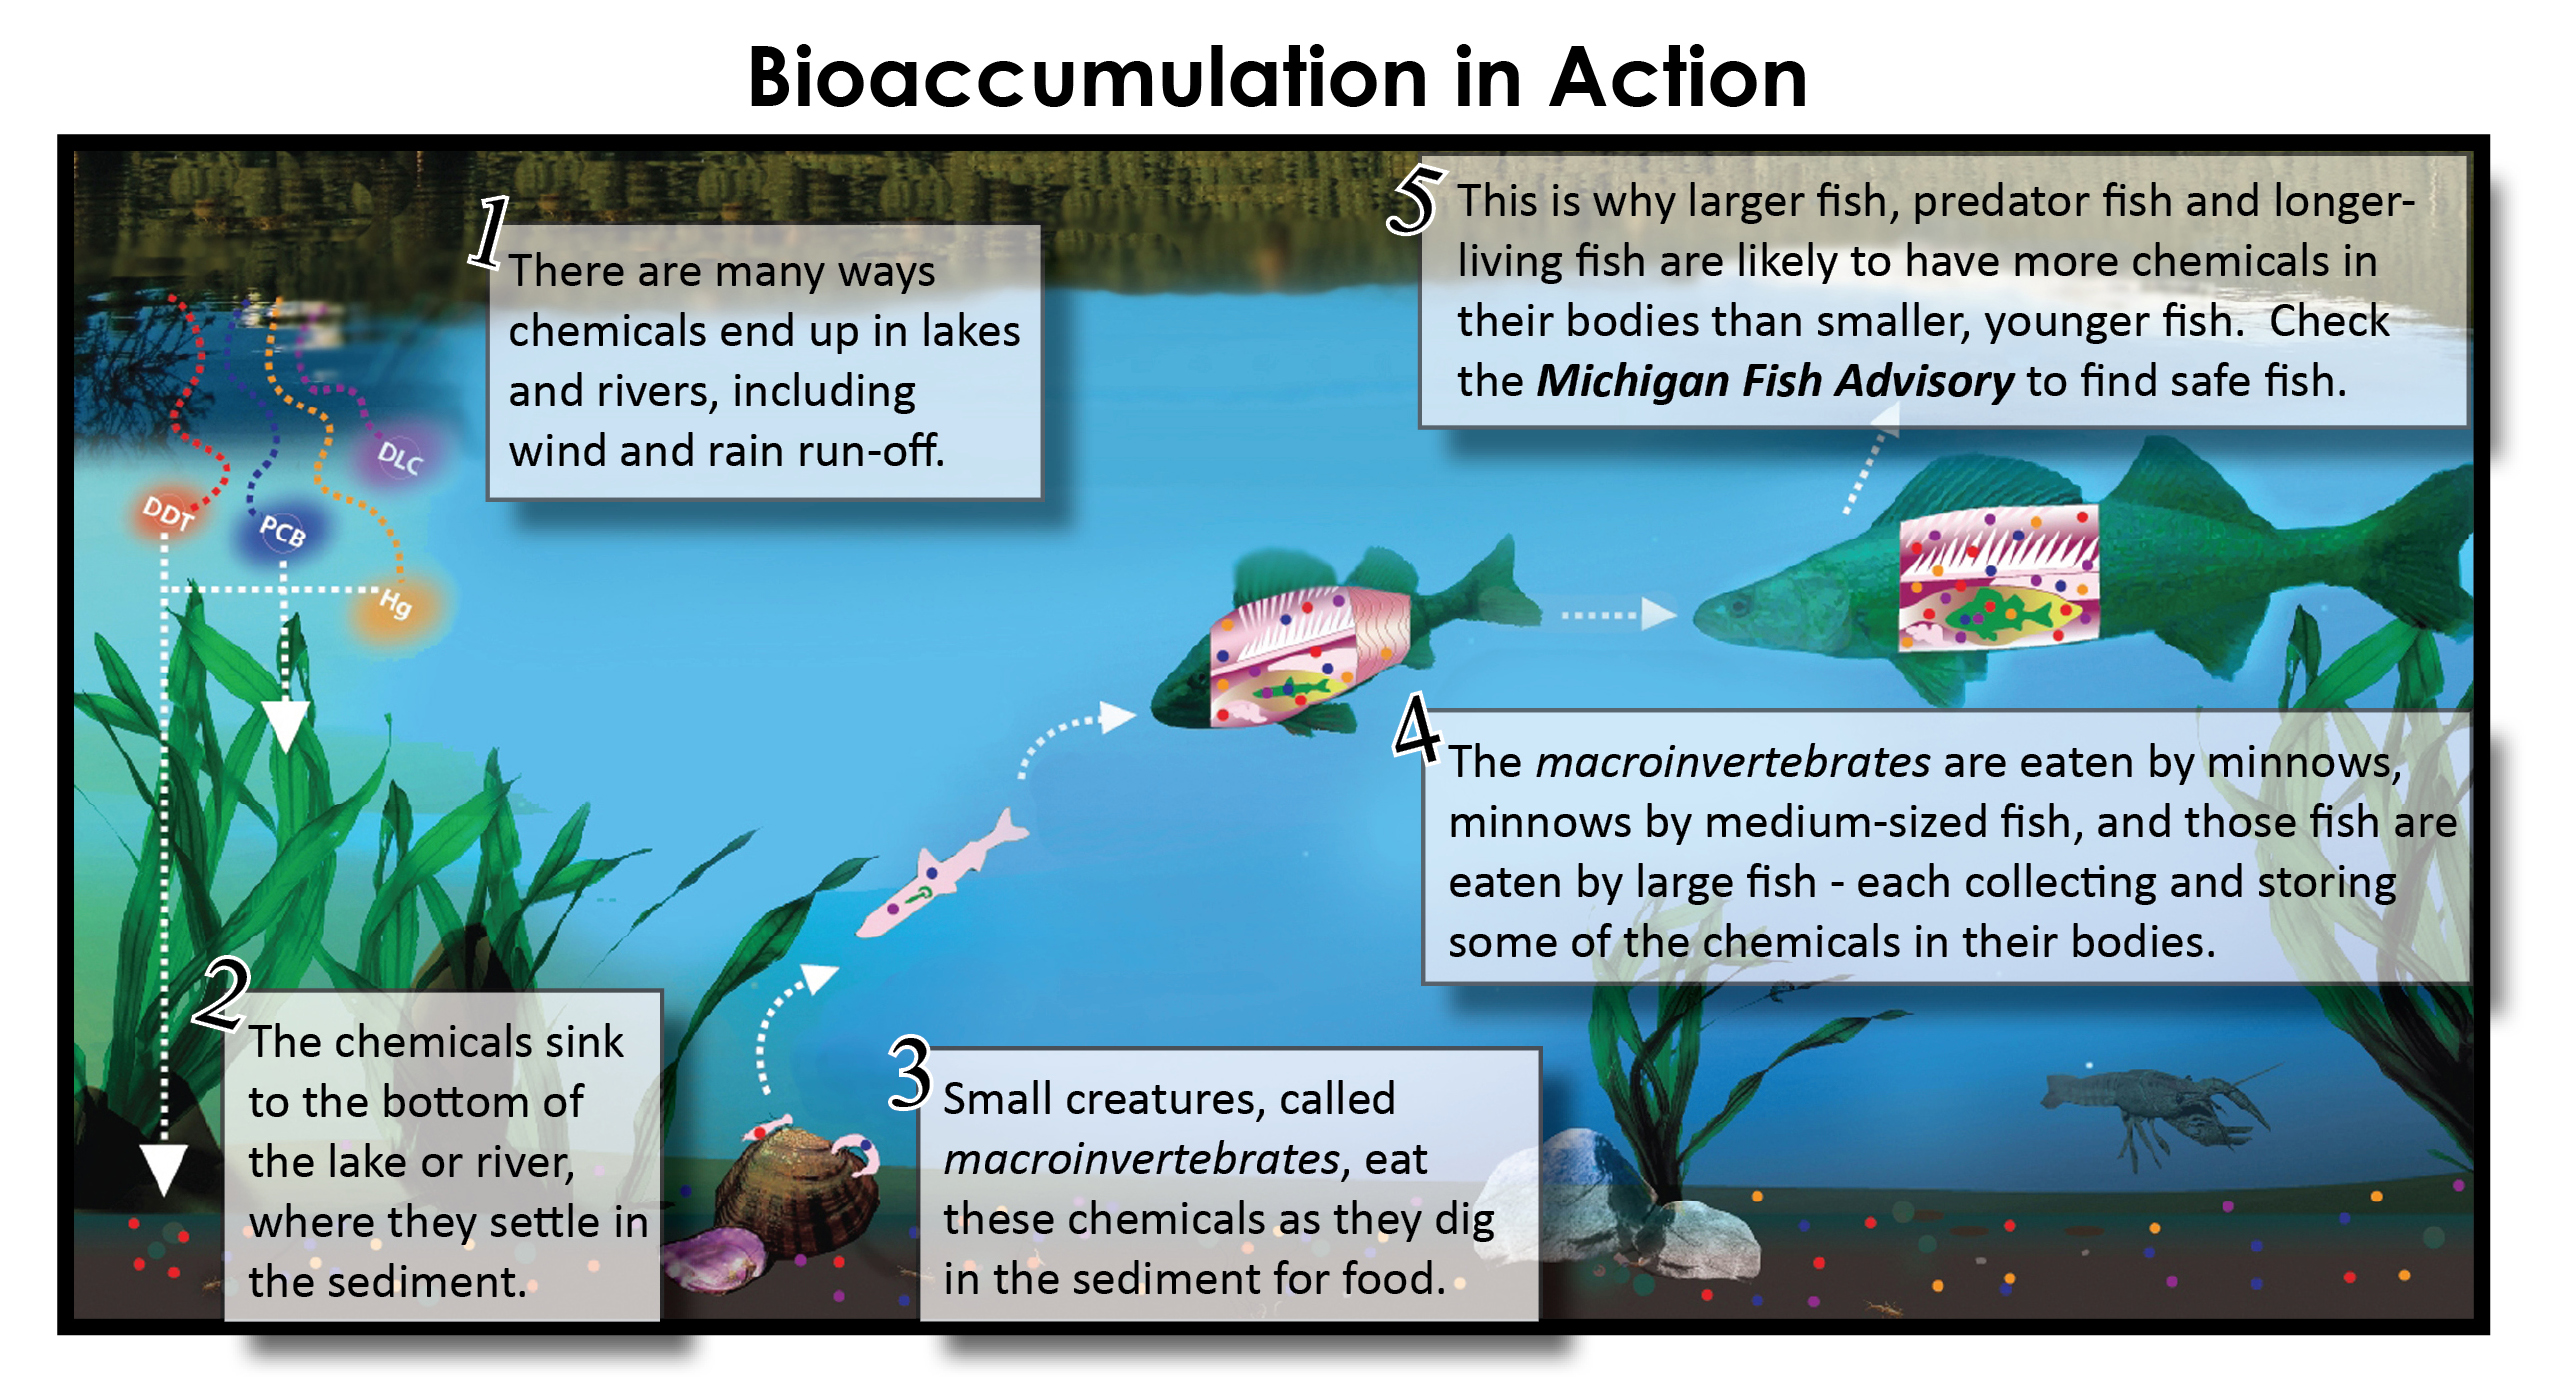 Bioaccumulation in Action